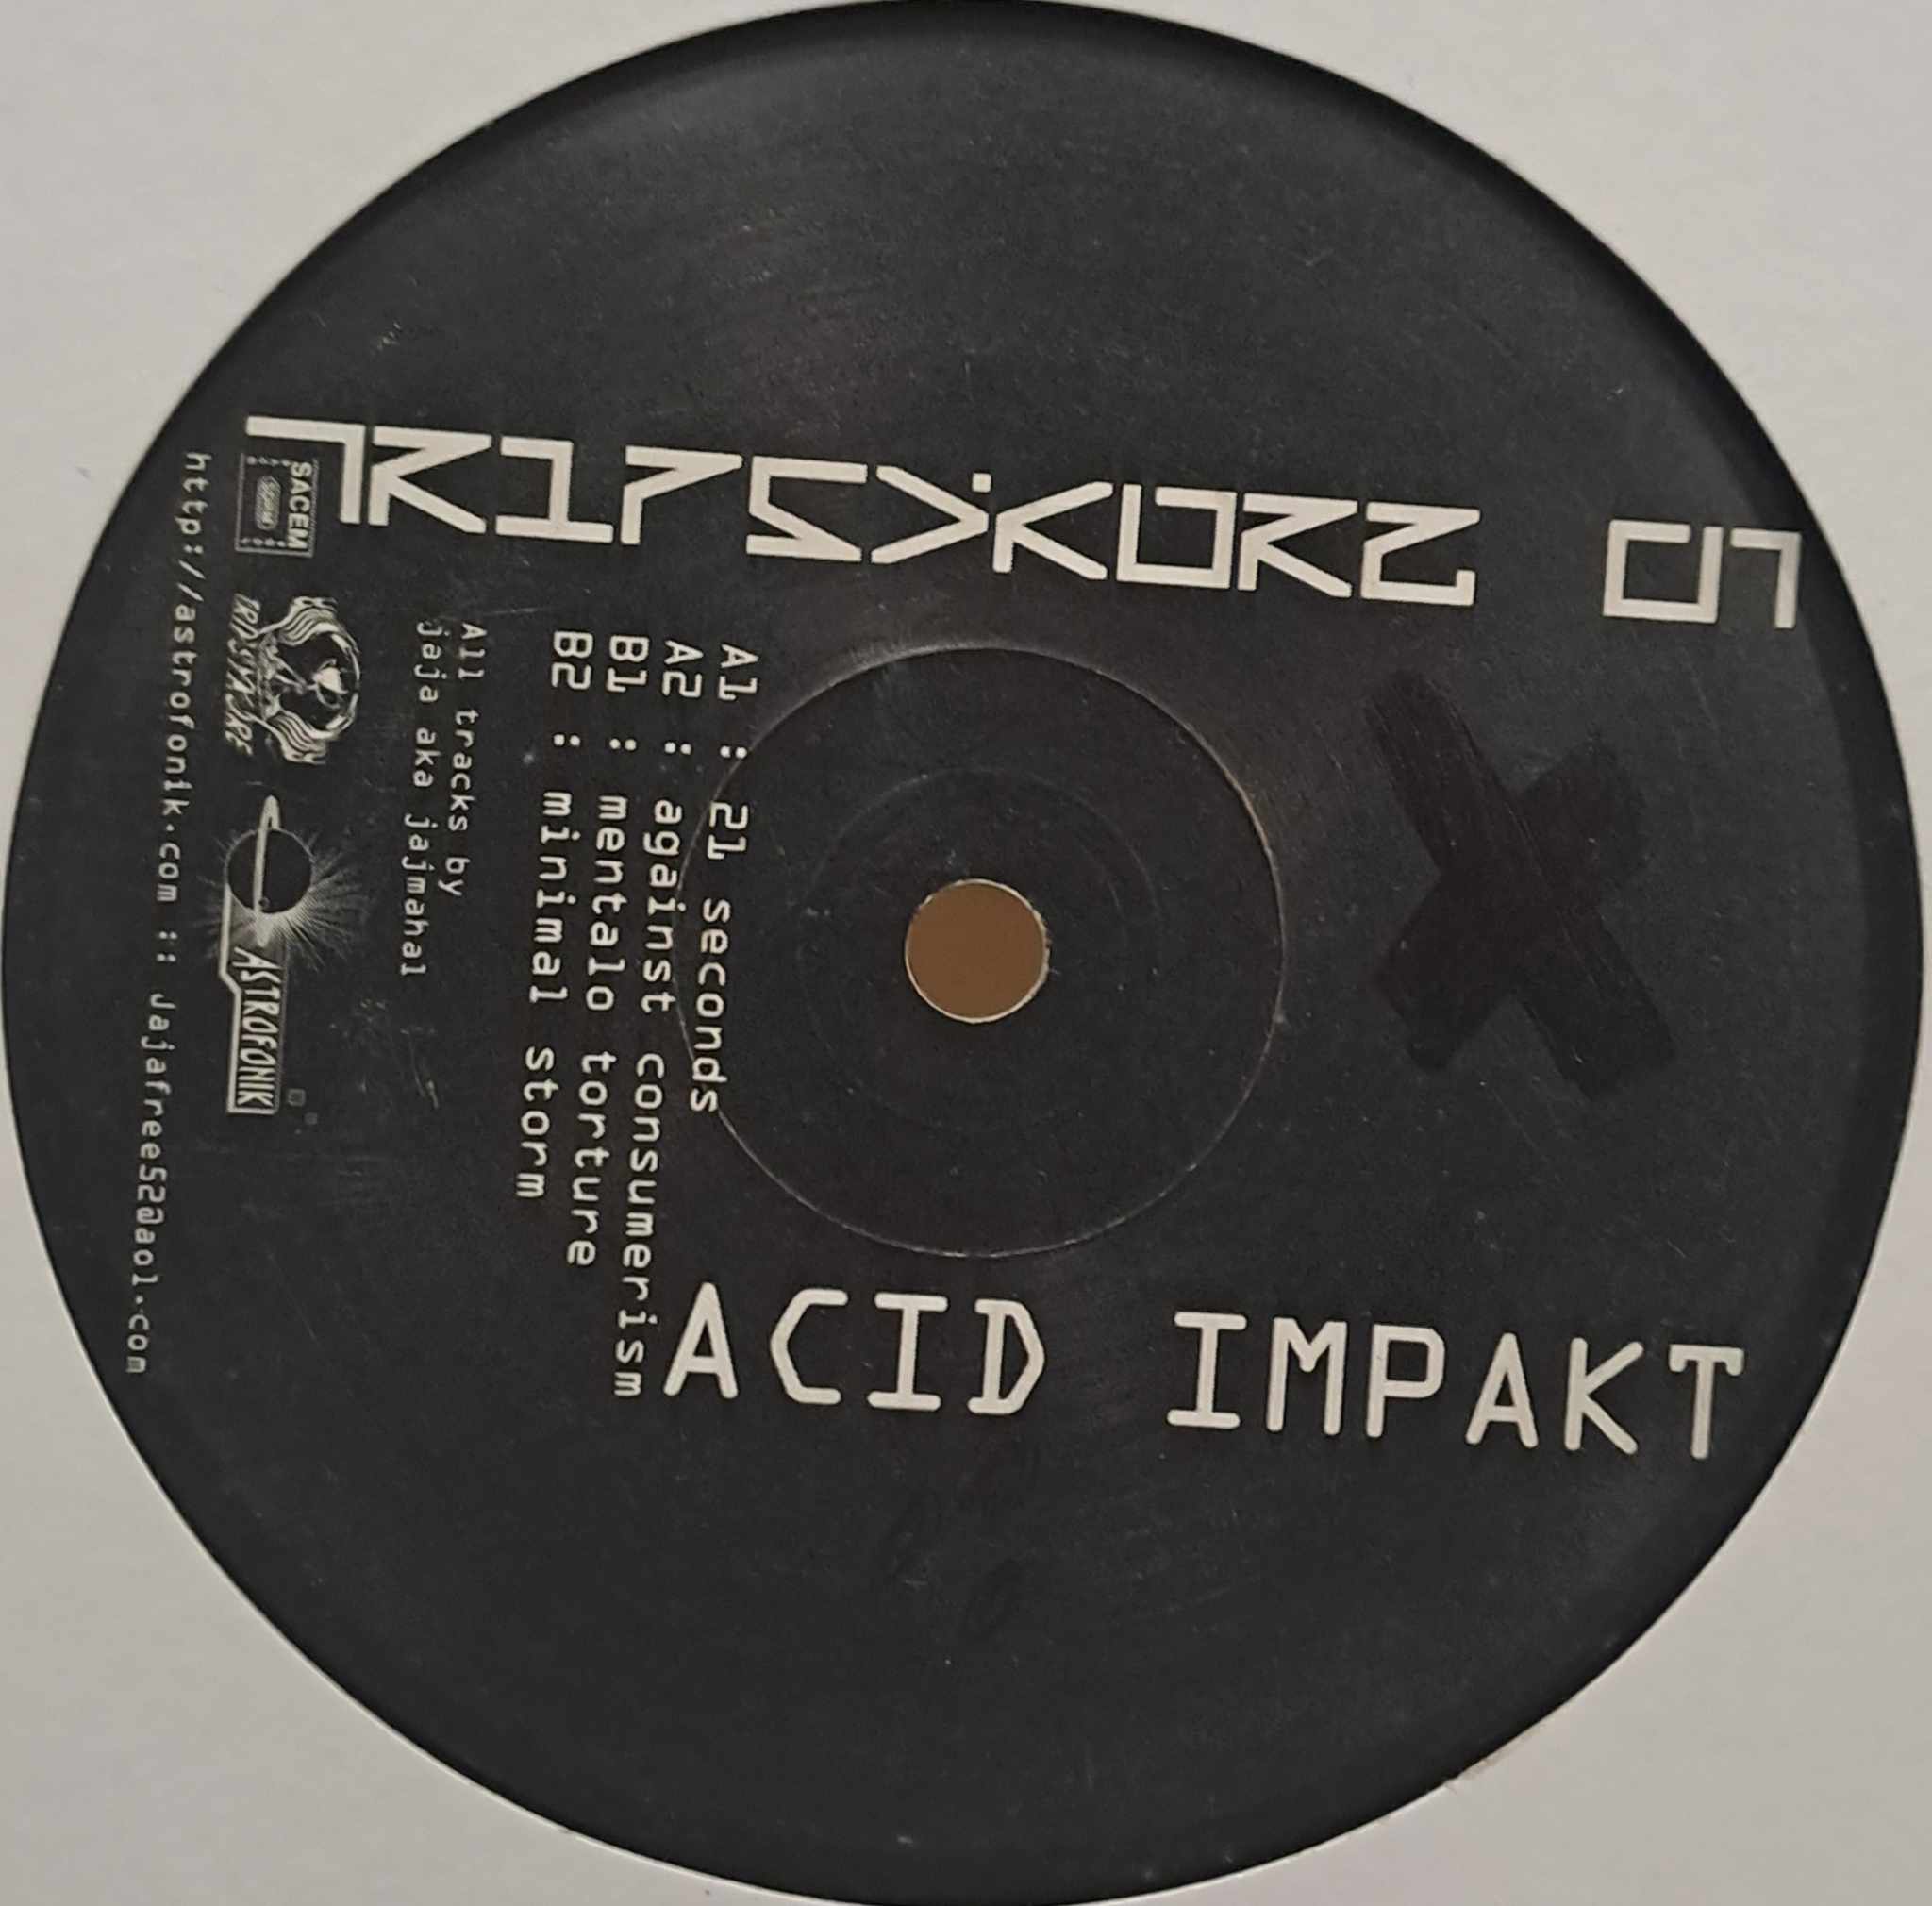 Tripsykore 01 - vinyle acid